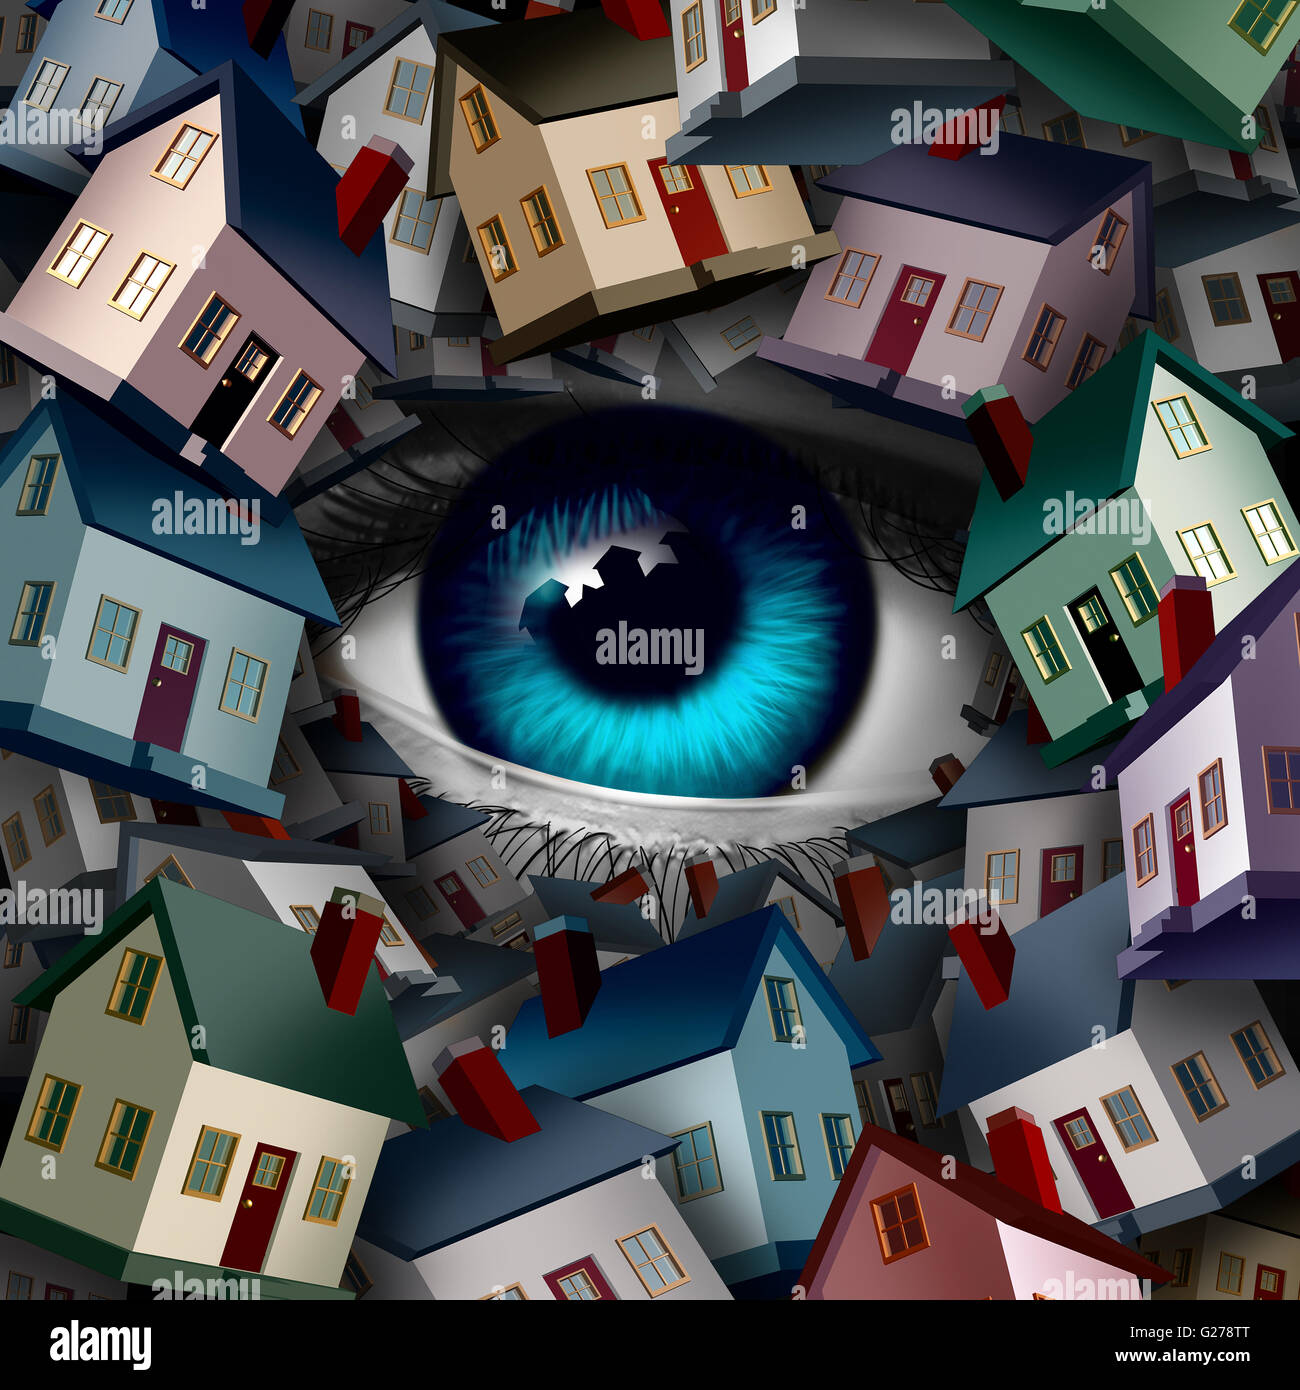 Neighborhood Watch y el concepto de seguridad en el hogar como un grupo de casas cubriendo un ojo humano como una bola realestate o inspección metaph Foto de stock